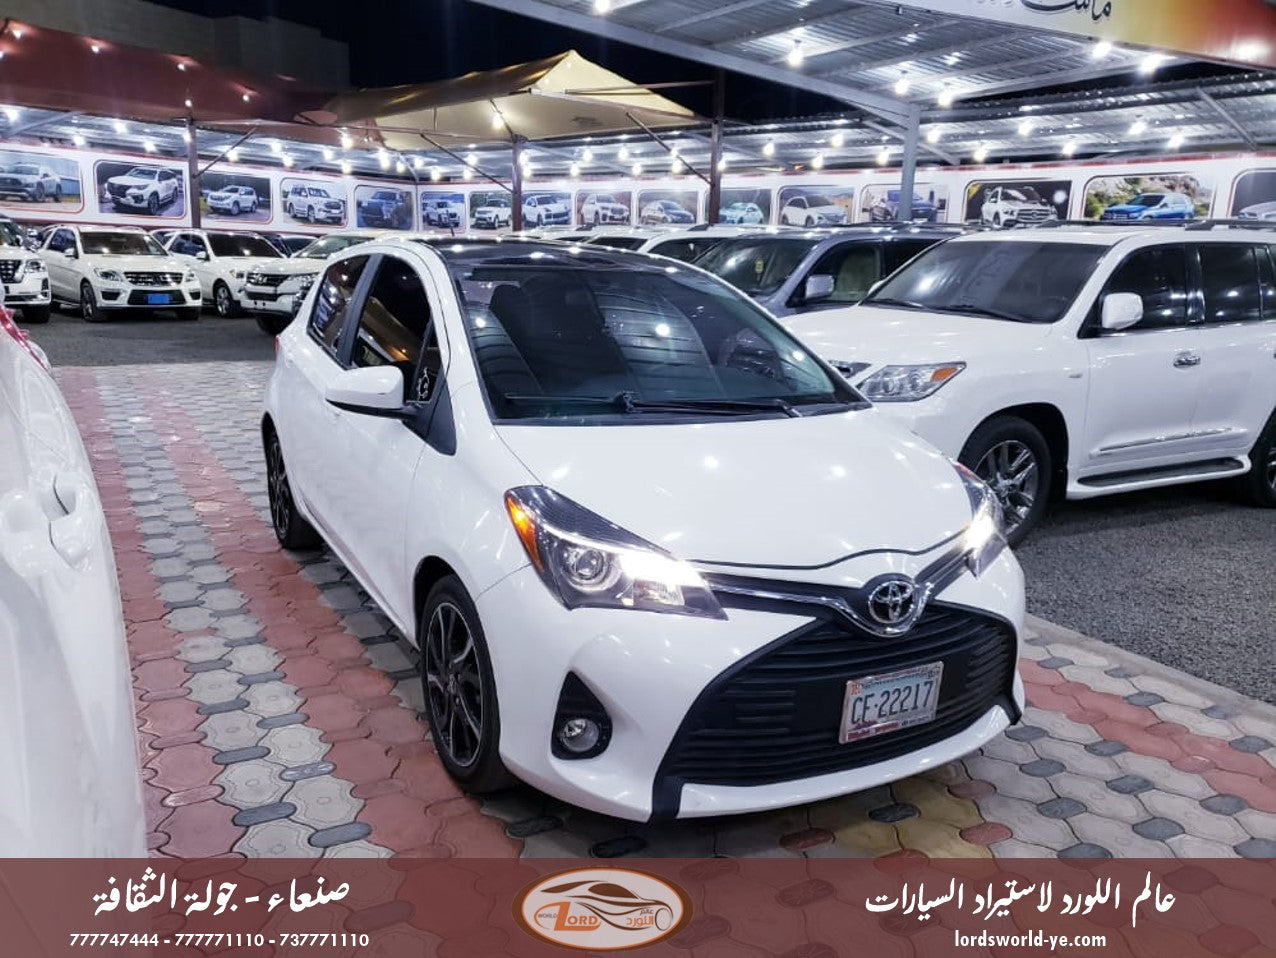 معرض عالم اللورد للسيارات - افضل سيارات للبيع في اليمن - يارس 2015